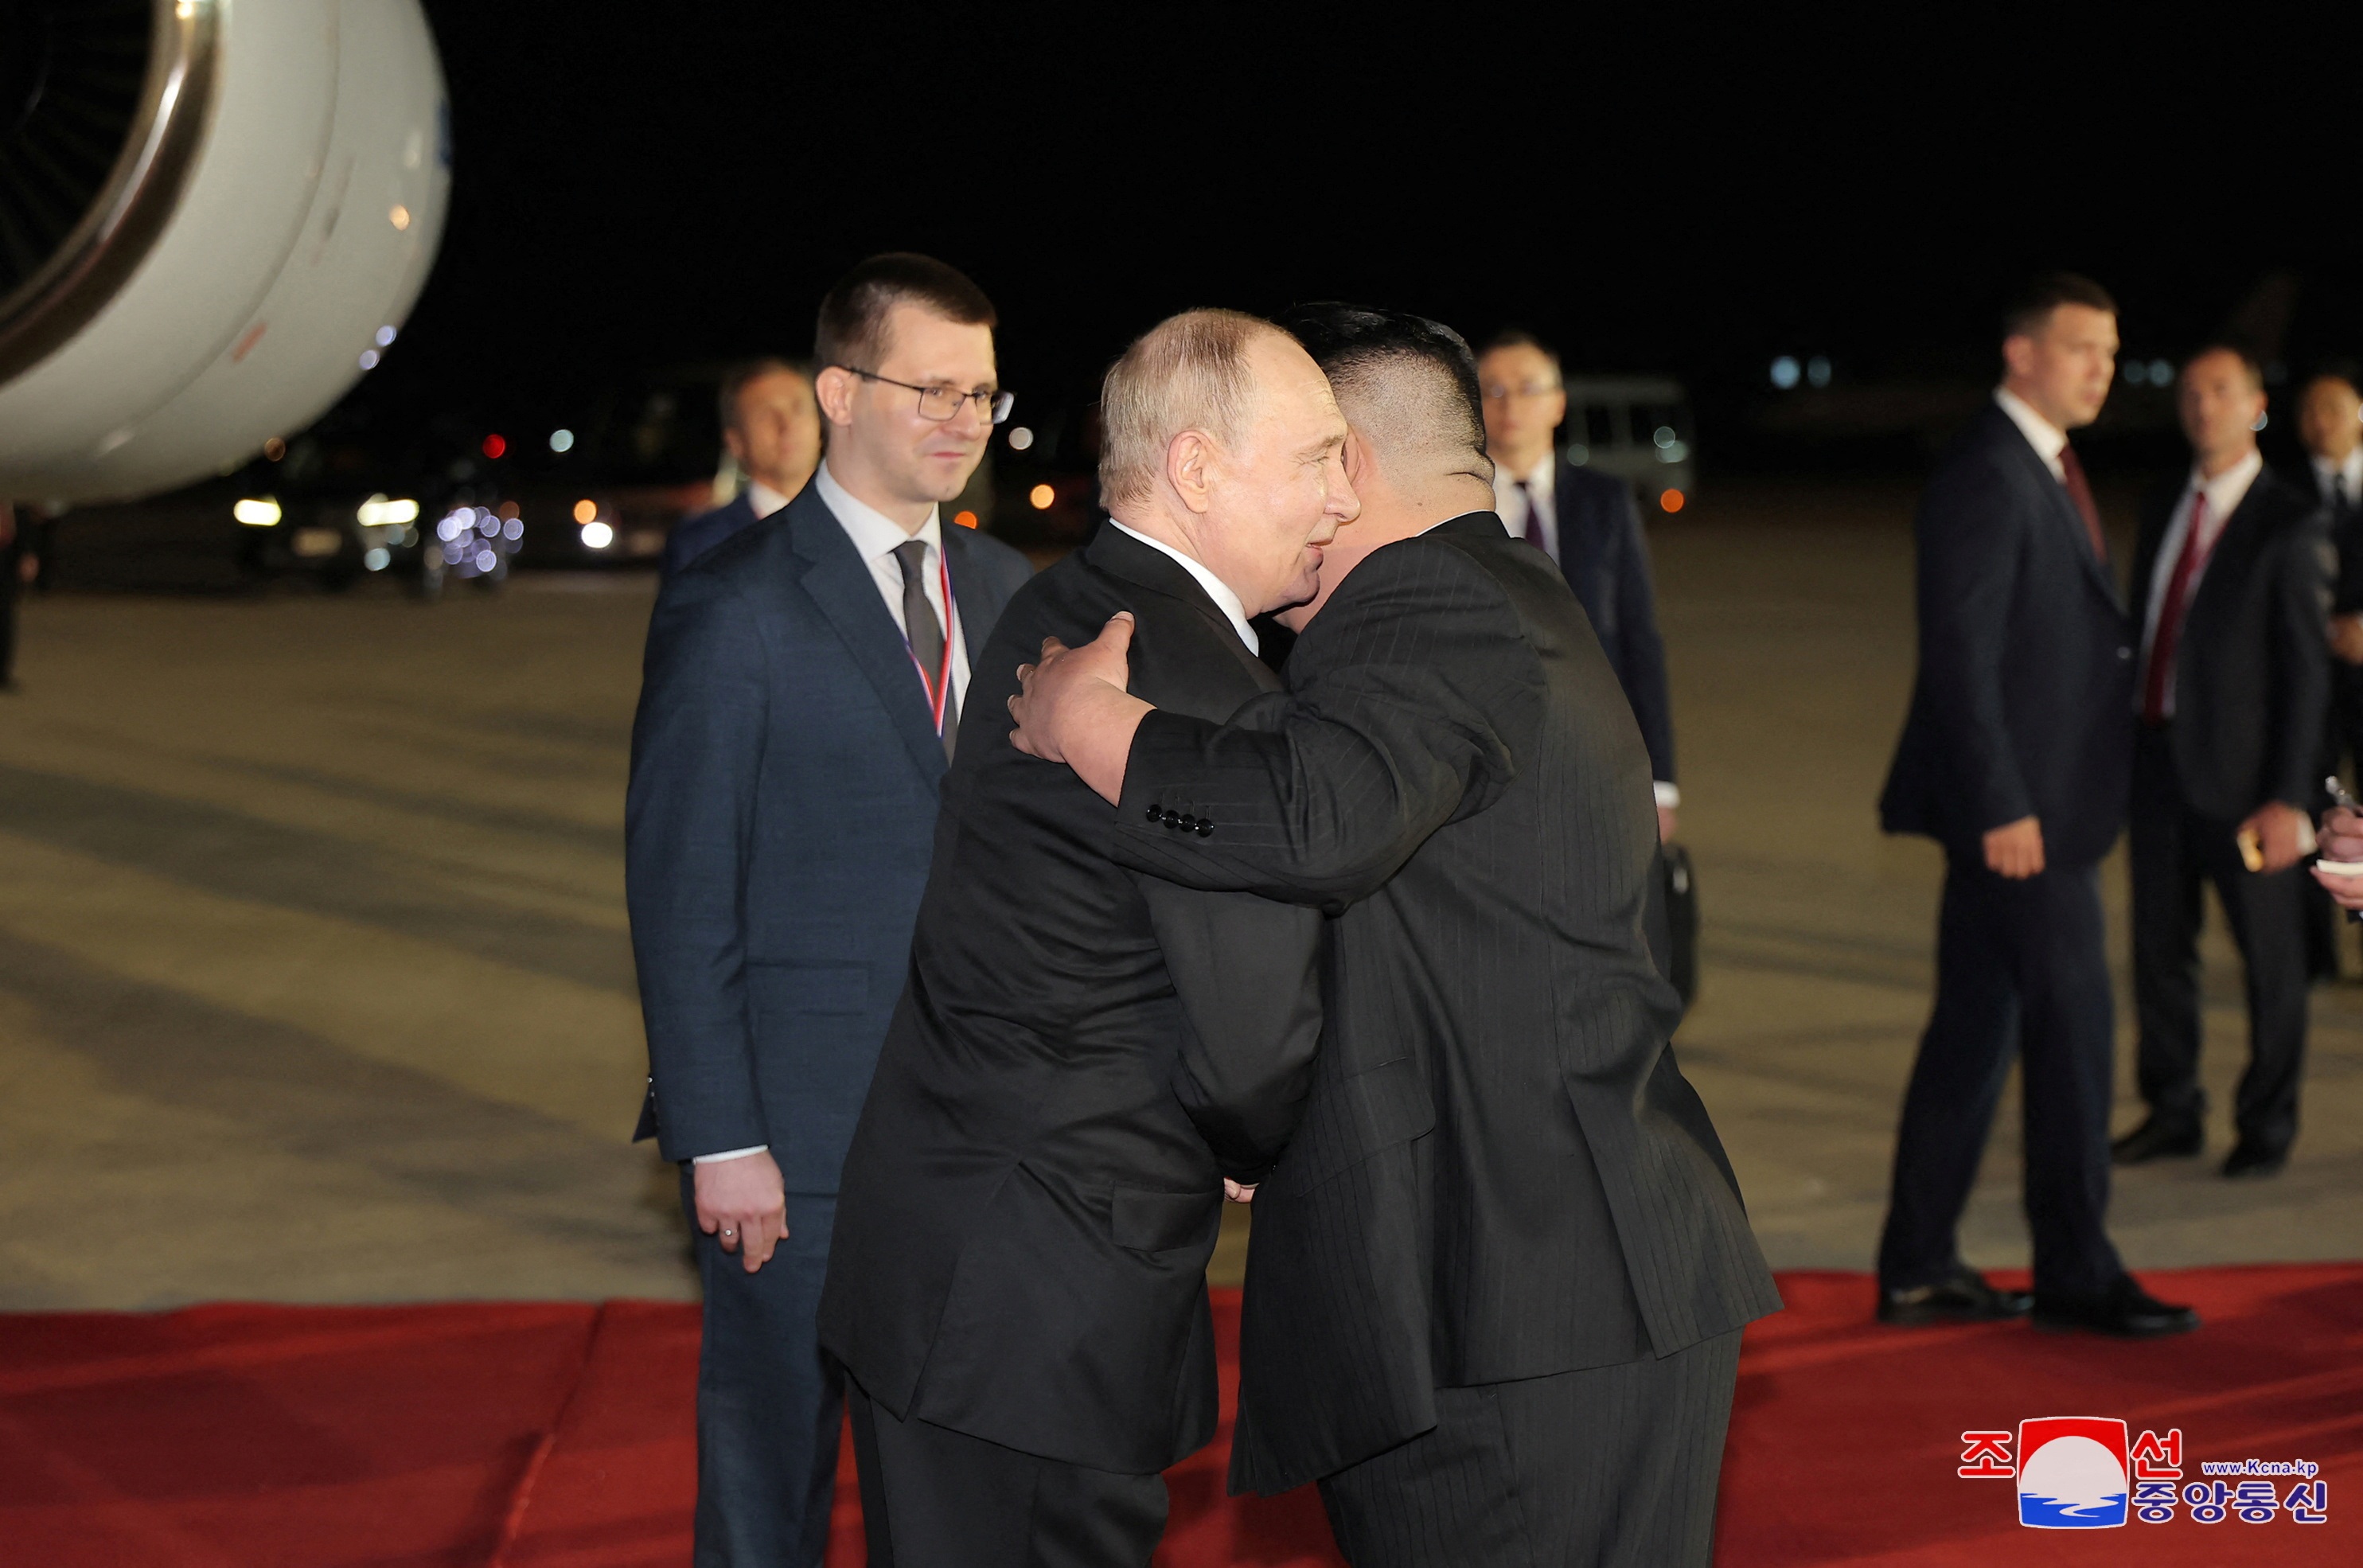 Hai nhà lãnh đạo Nga và Triều Tiên ôm và chào hỏi nhau tại sân bay (Ảnh: Reuters).